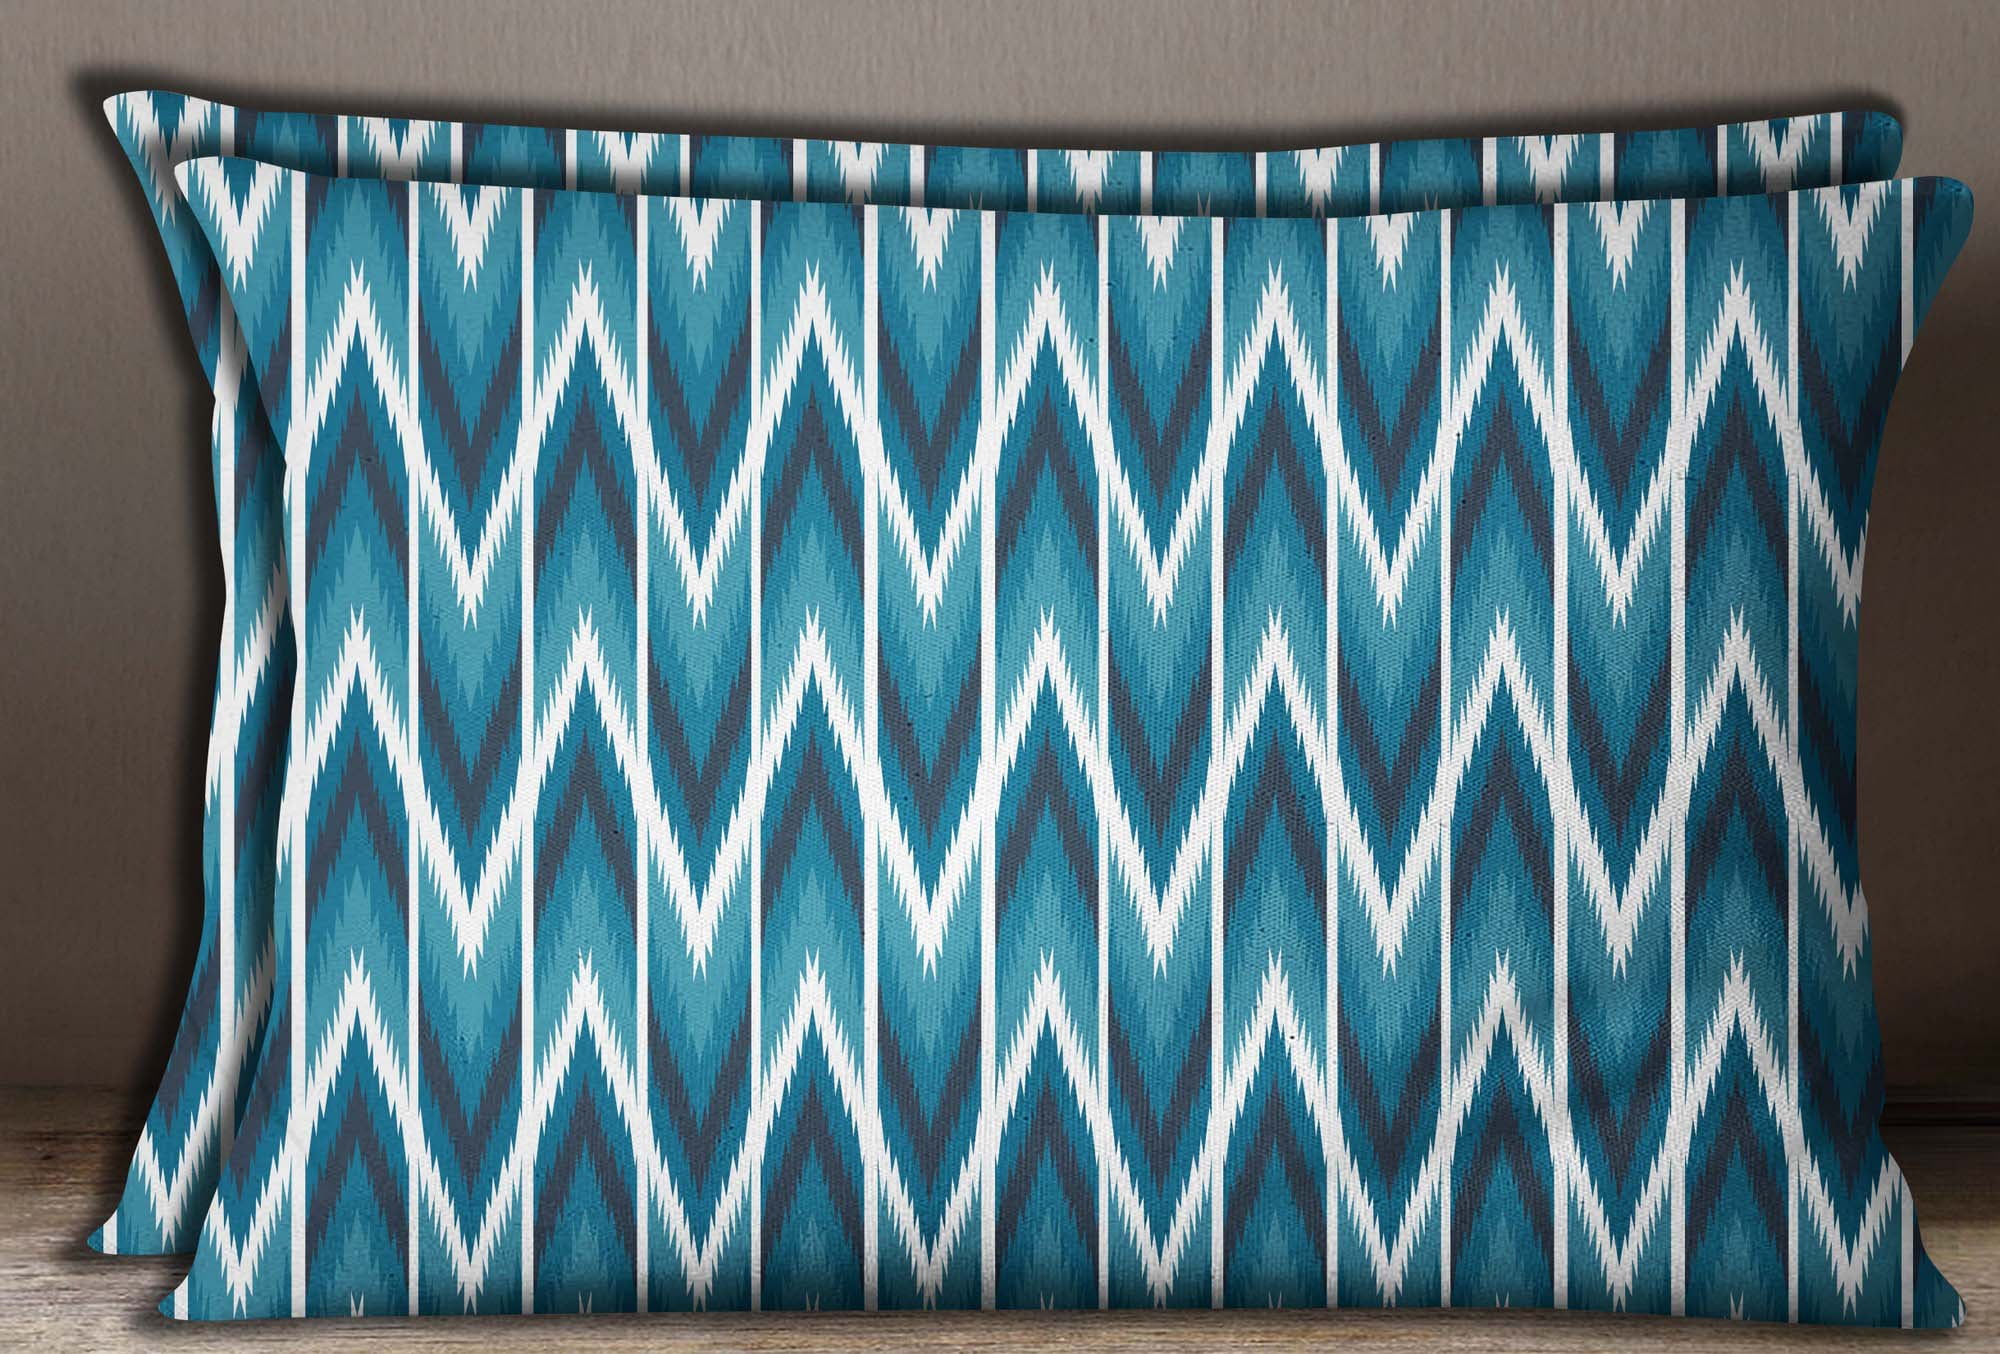 Details about   S4Sassy Printe Decorative Cushion Cover Cotton Poplin 2 Pcs Pillow Sham 